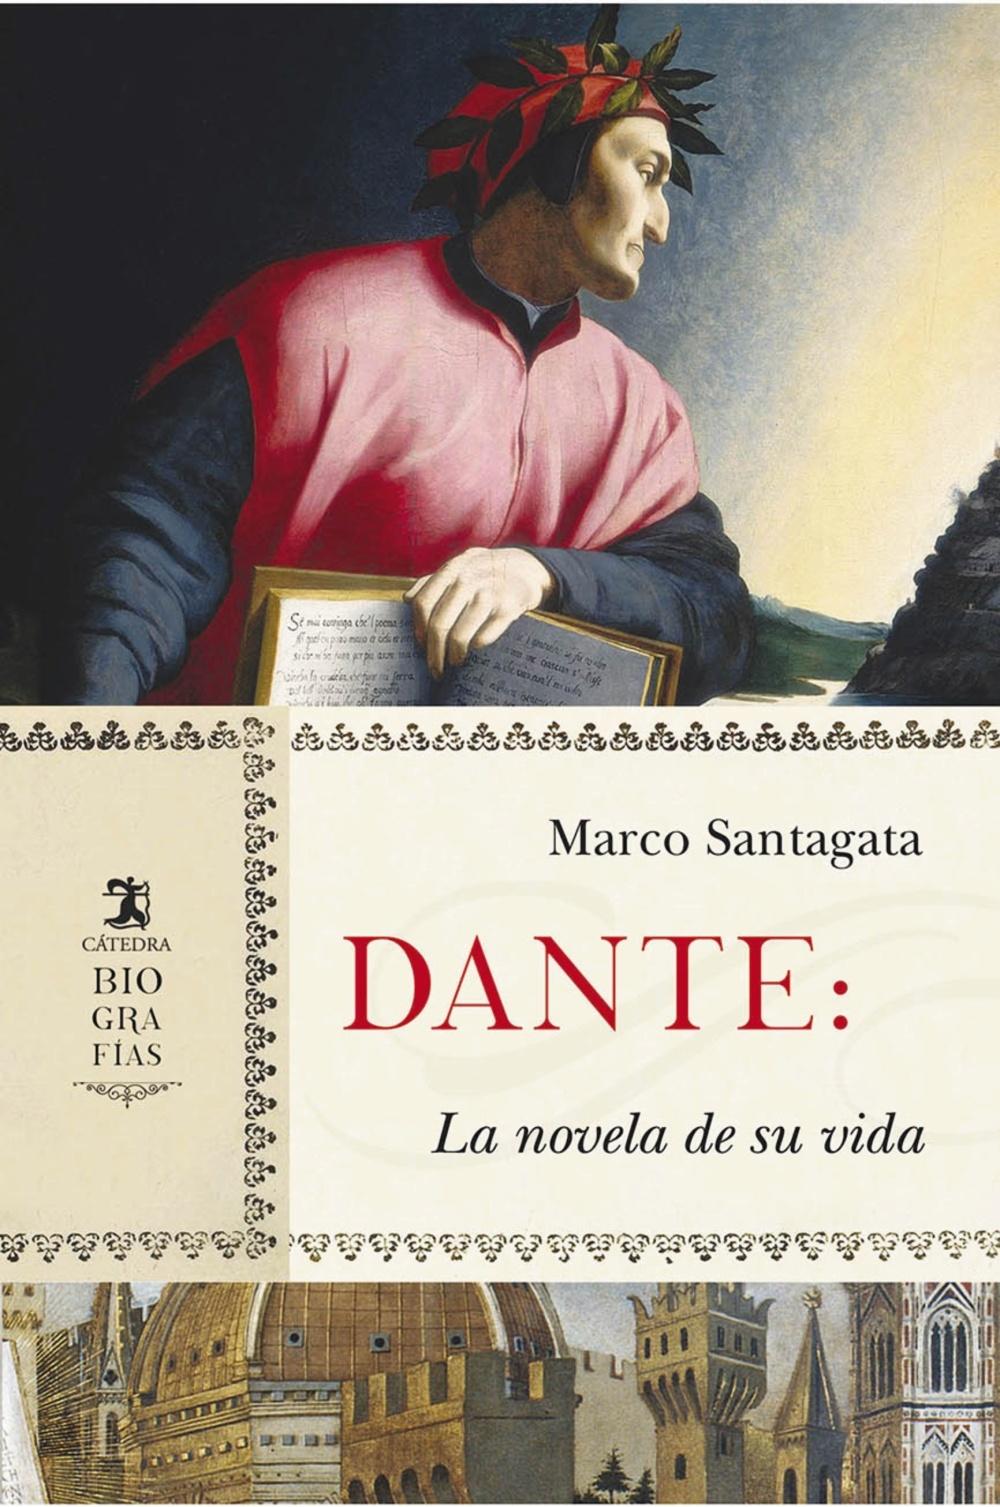 Dante "La Novela de su Vida". 